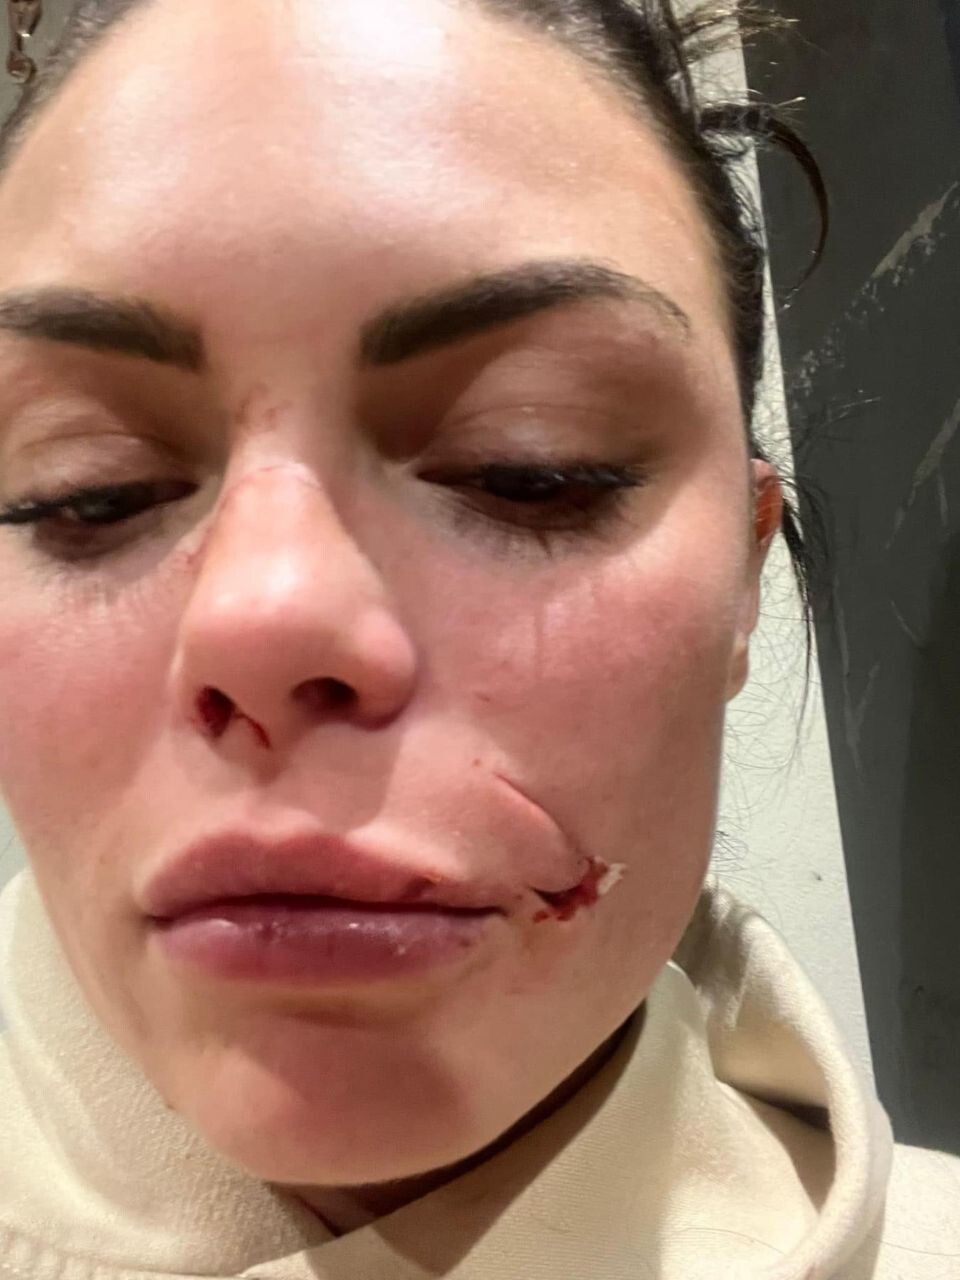 Собака напала на женщину и изуродовала ей лицо